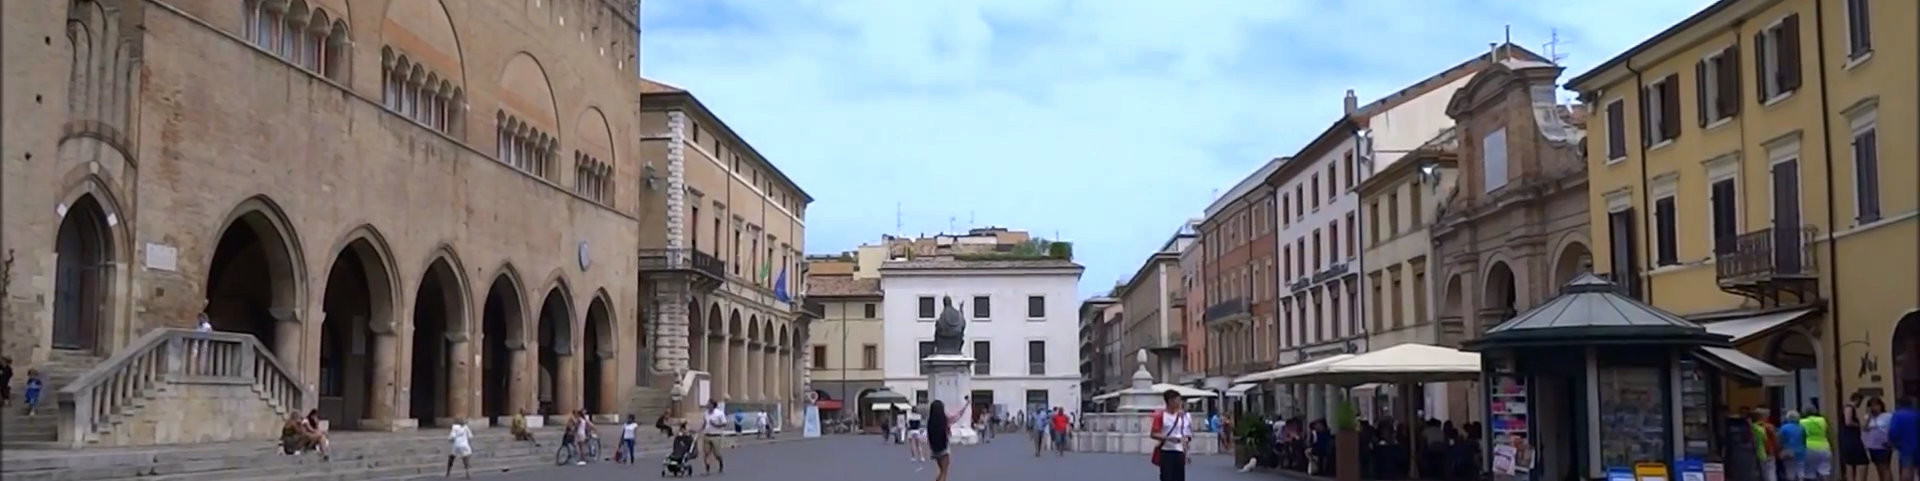 Rimini - Piazza Cavour